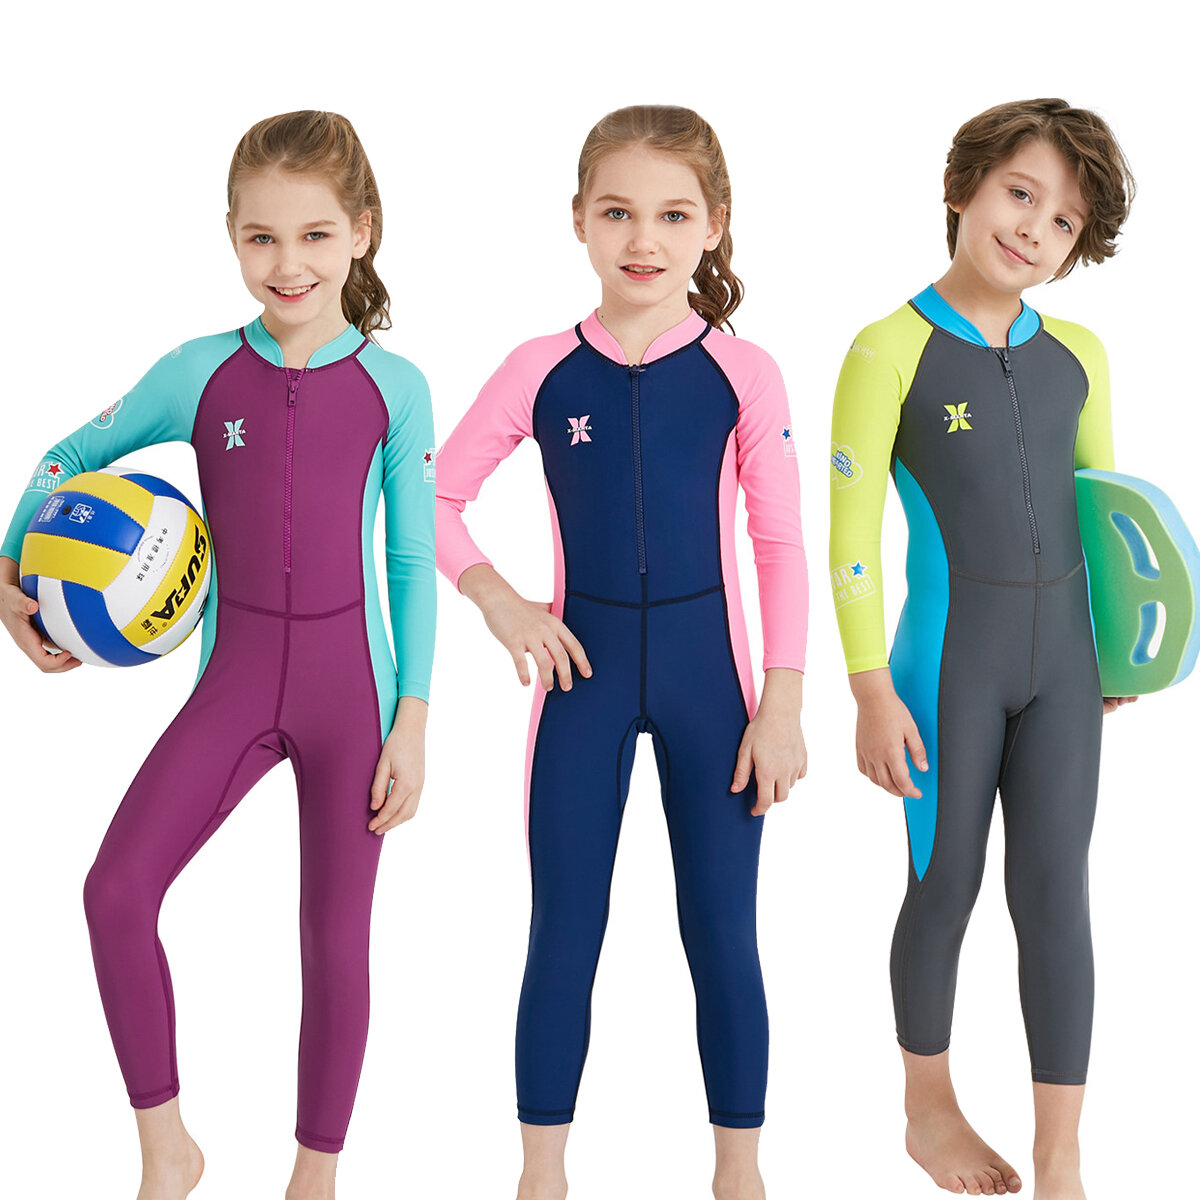 UPF50 + مقاوم للأشعة فوق البنفسجية للأطفال كامل الجسم ملابس الغوص الاطفال مايوهات الغوص الدعاوى للبنين بنات تصفح الرياضا